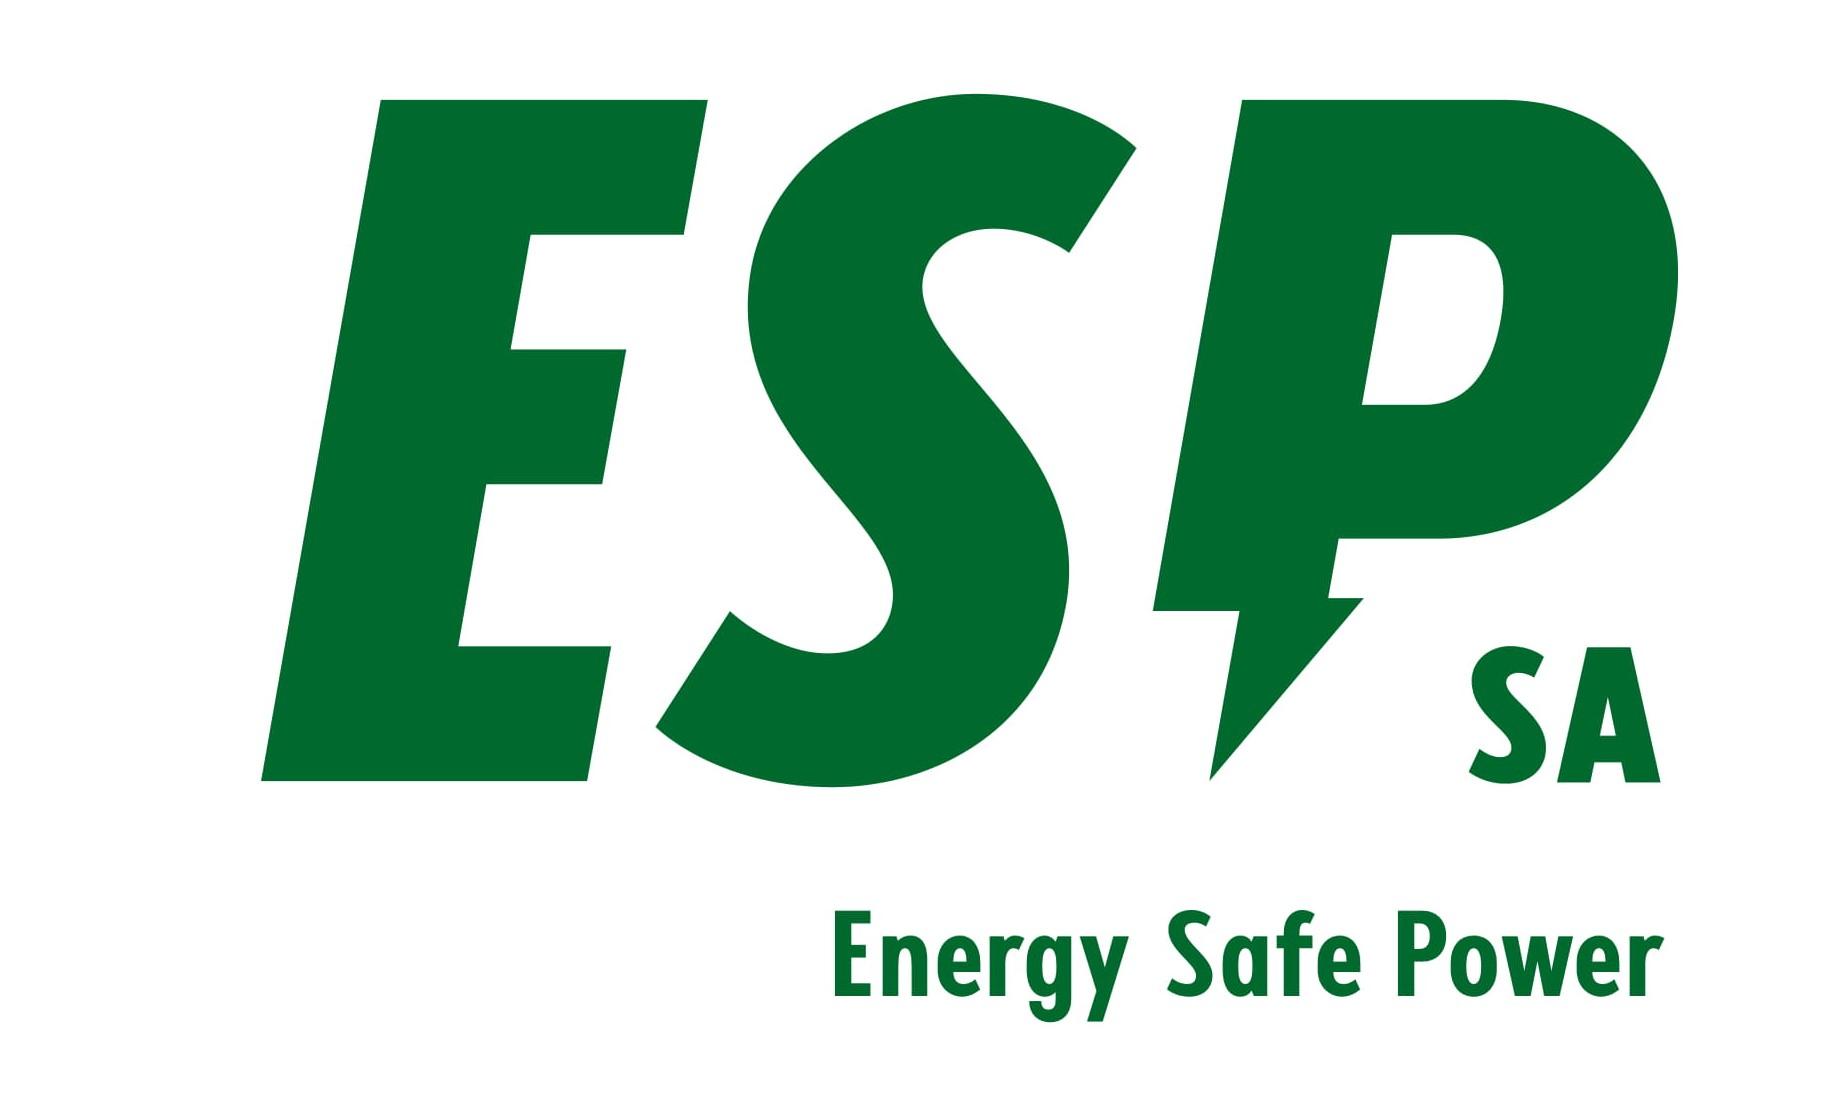 ENERGY SAFE POWER S.A.